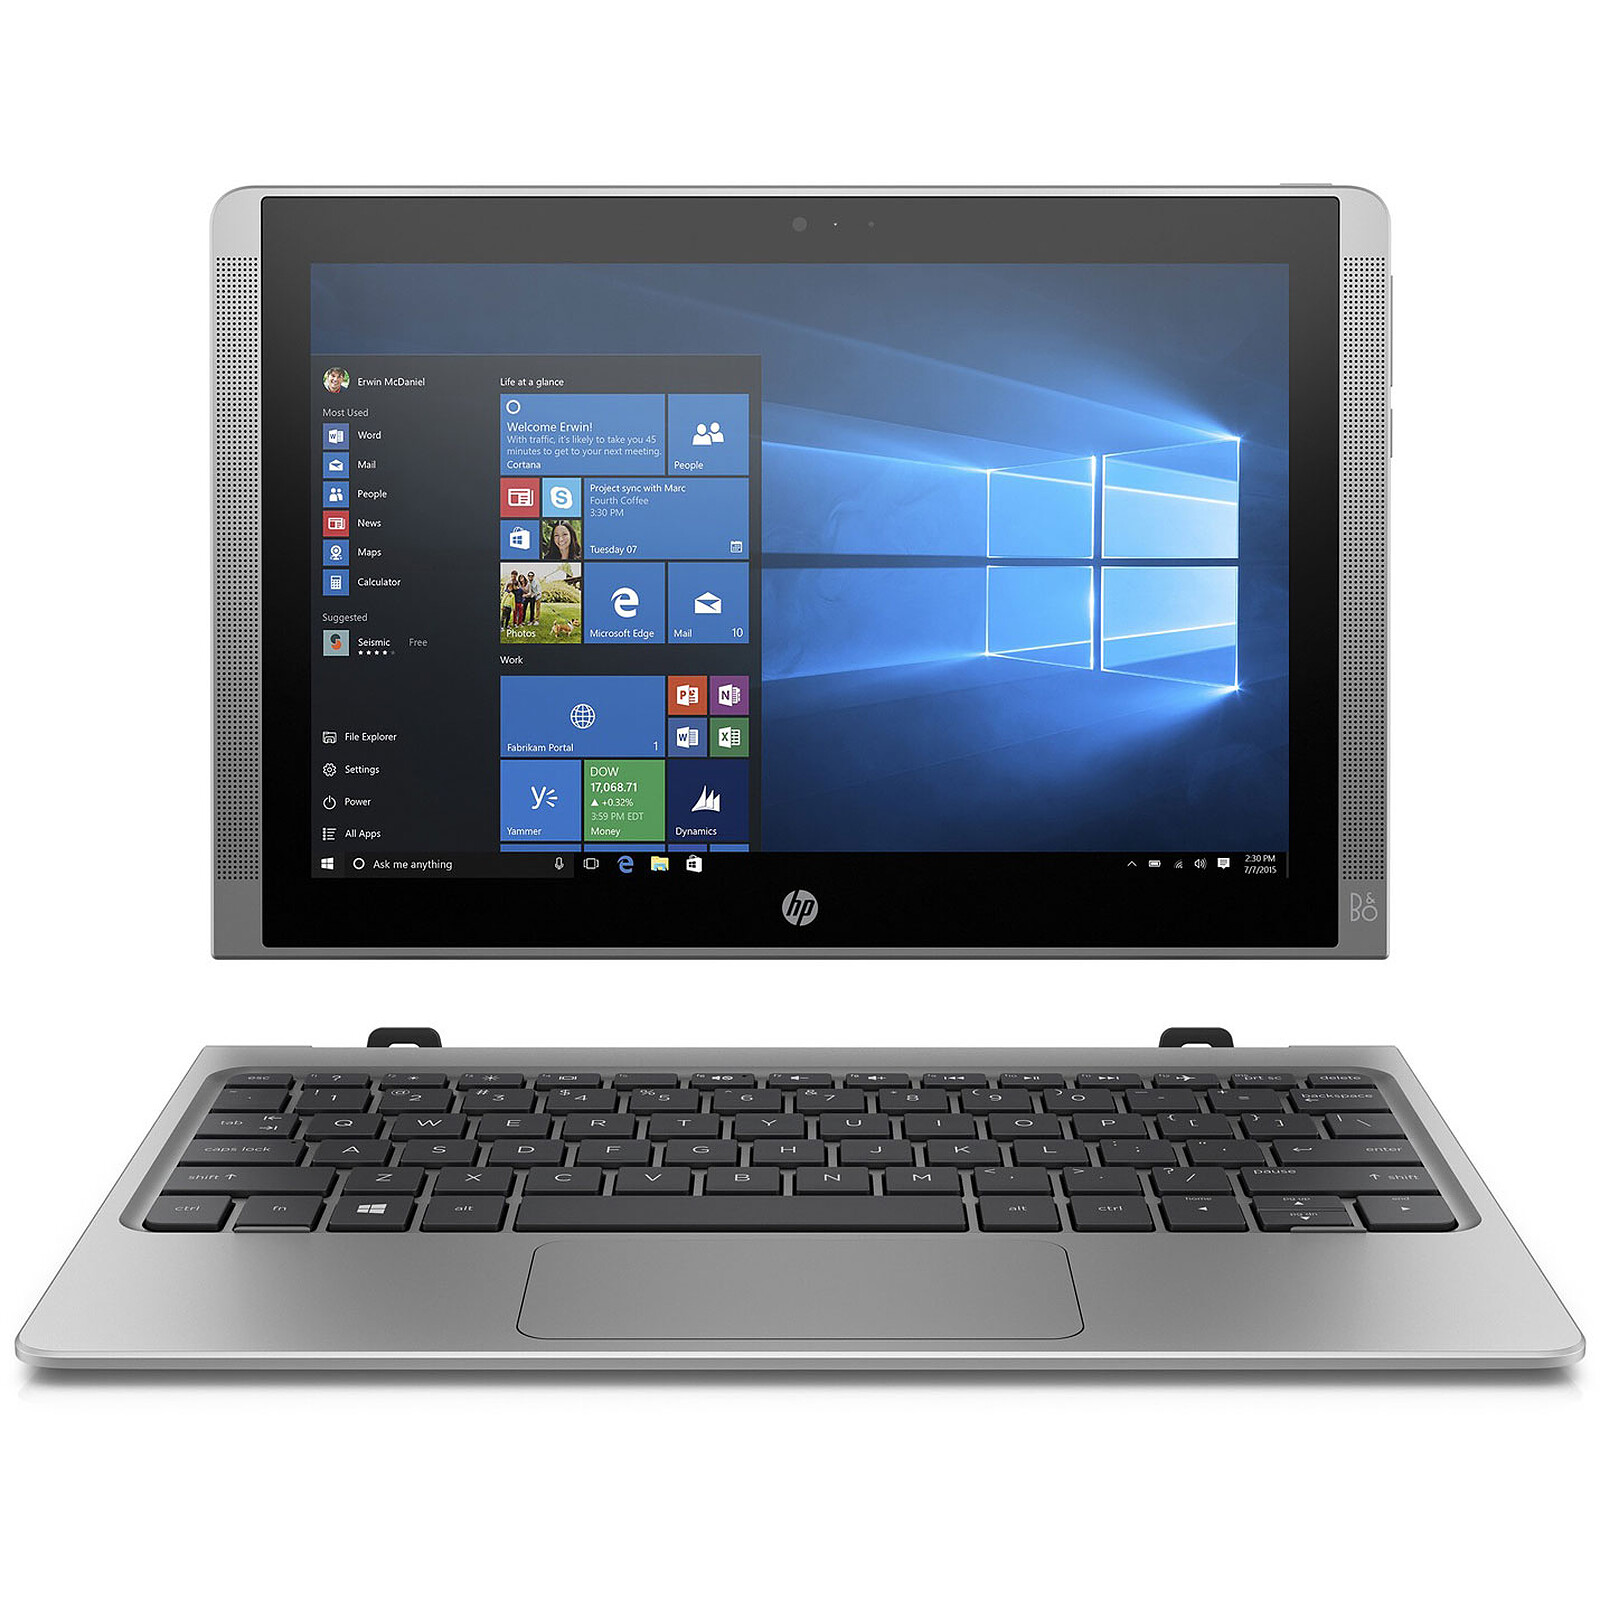 HP x2 210 (L5H42EA) - PC portable - Garantie 3 ans LDLC